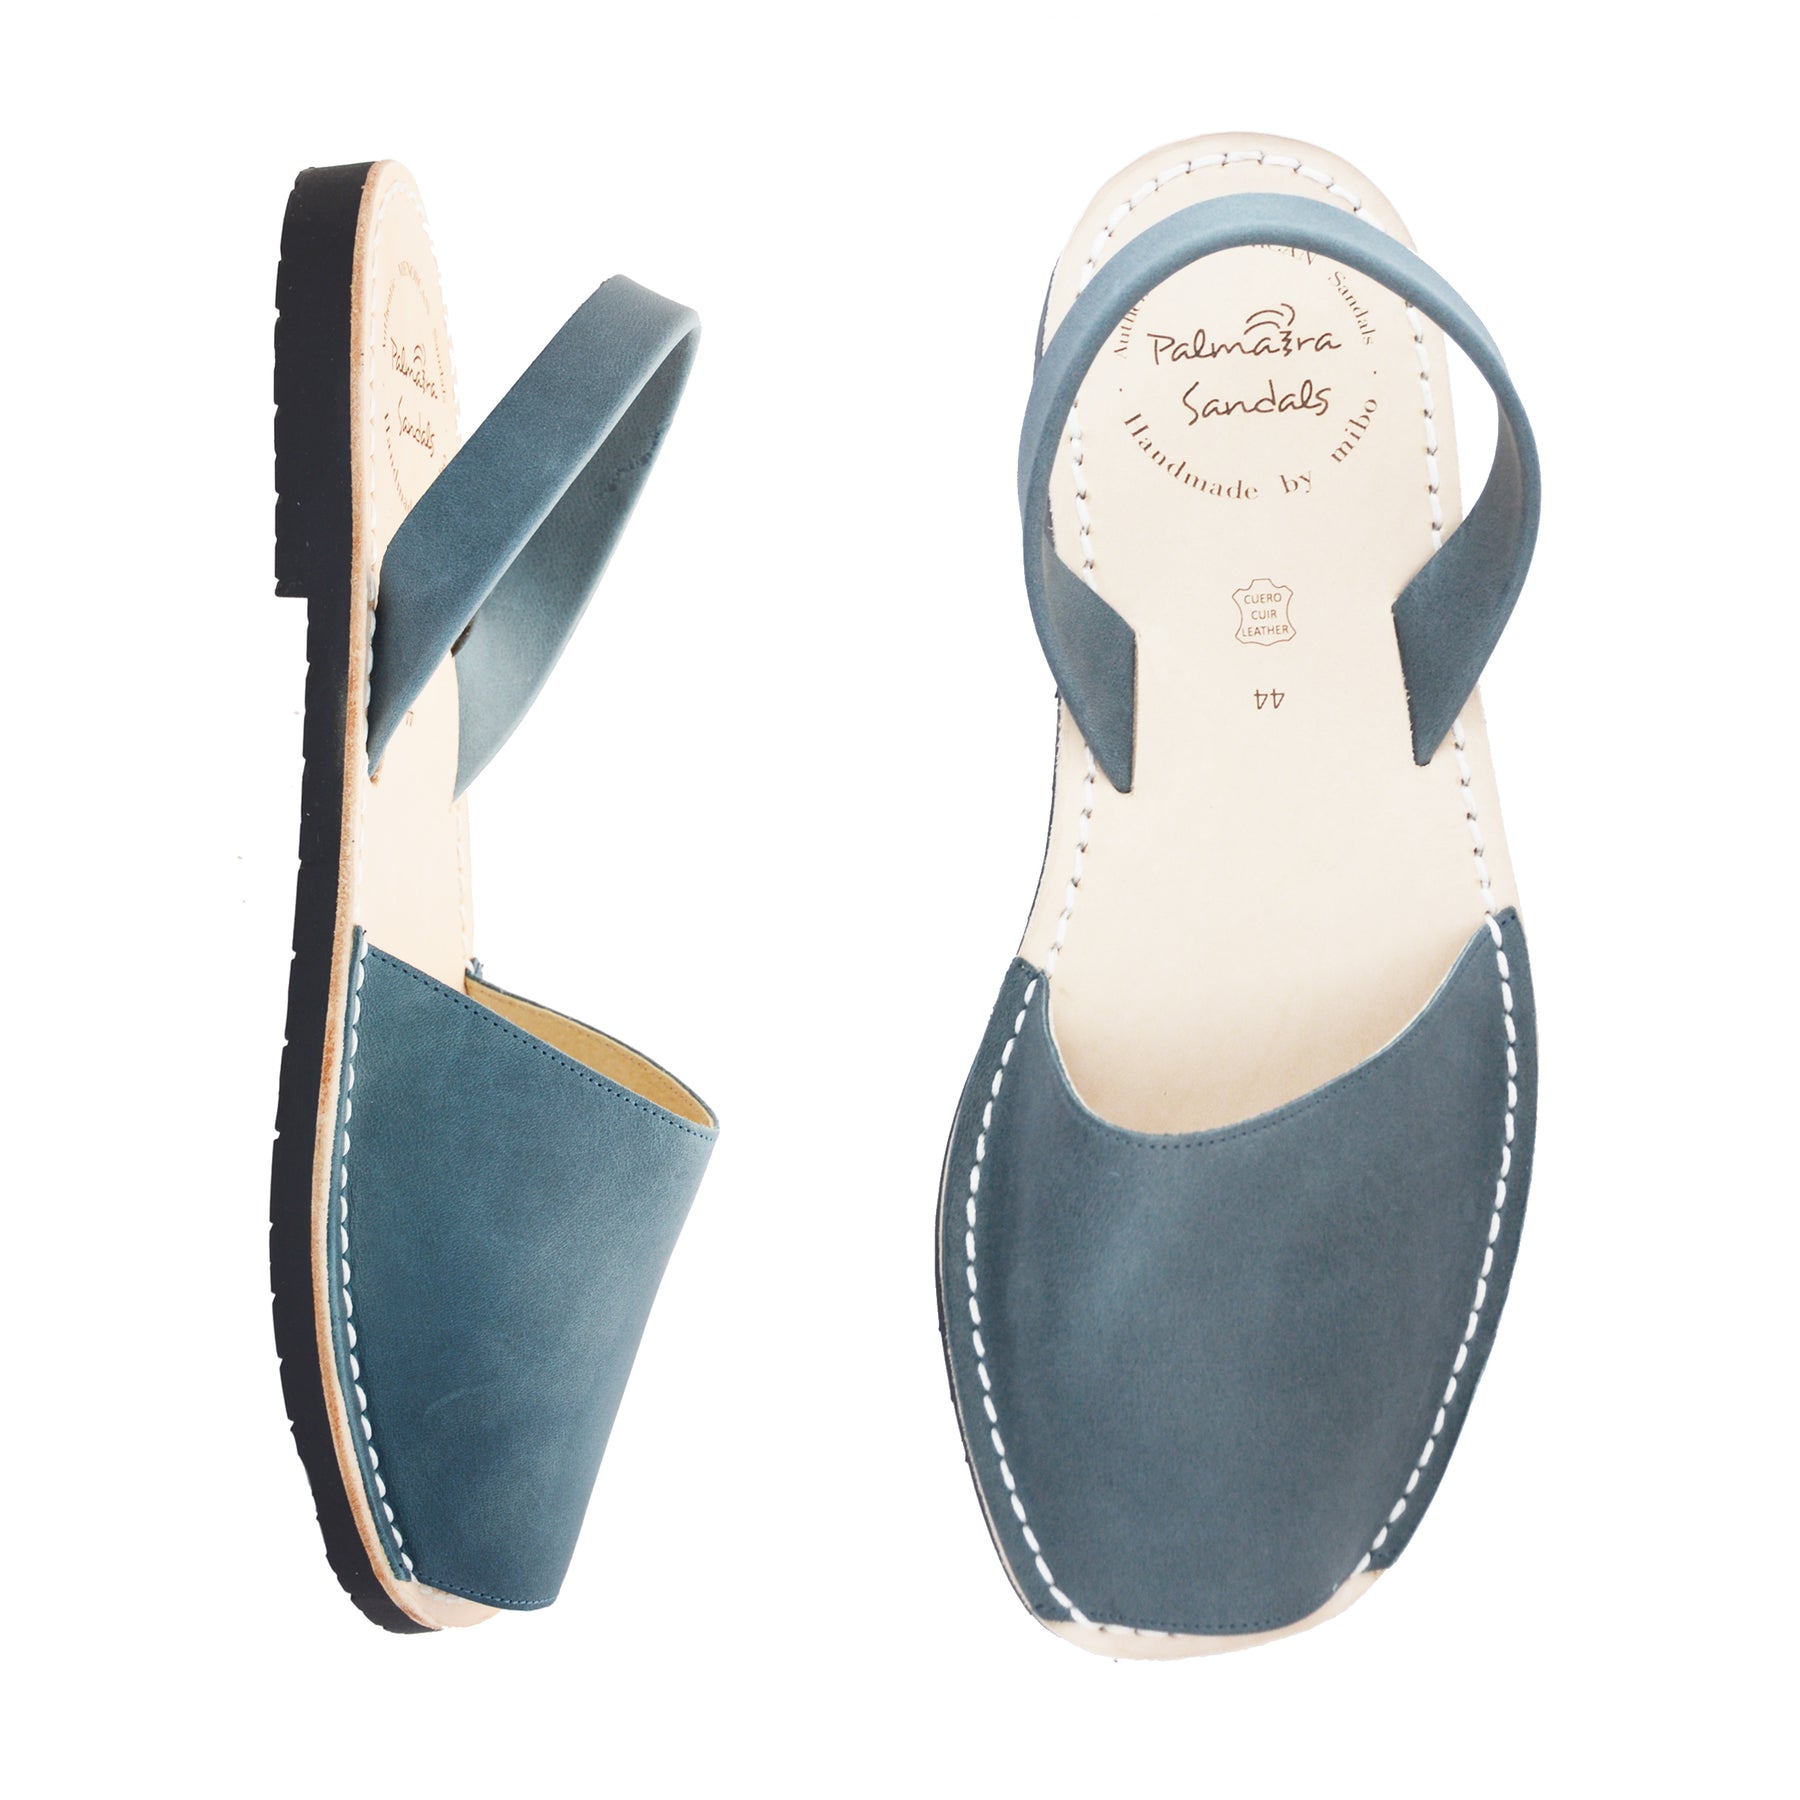 Mens blue leather avarcas sandals